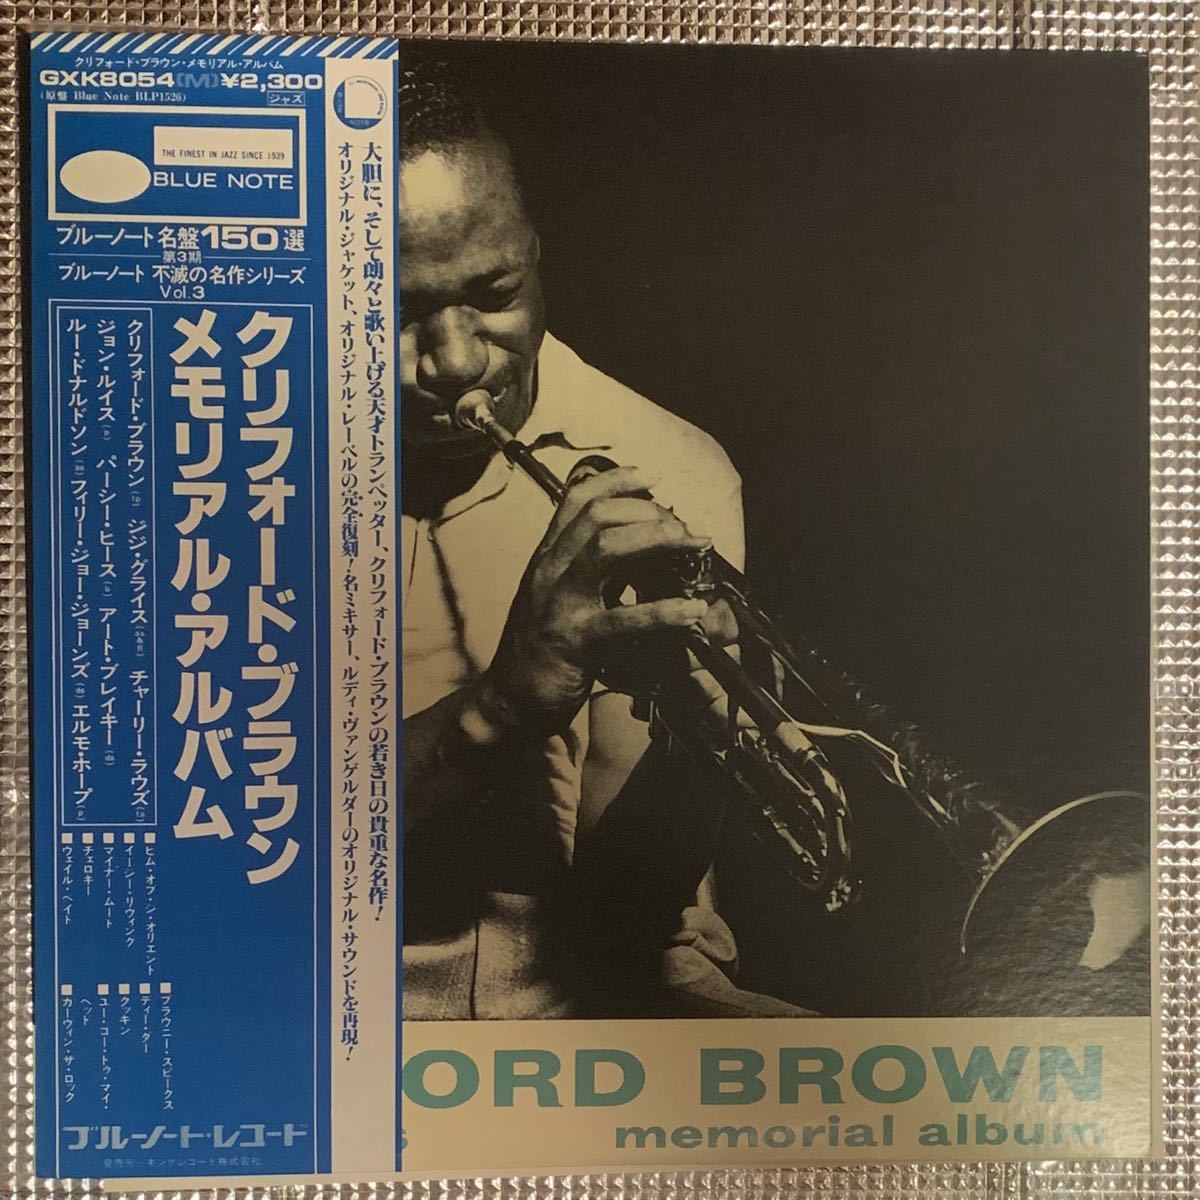 LPレコード クリフォード・ブラウン メモリアル アルバム/GXK8054(M)